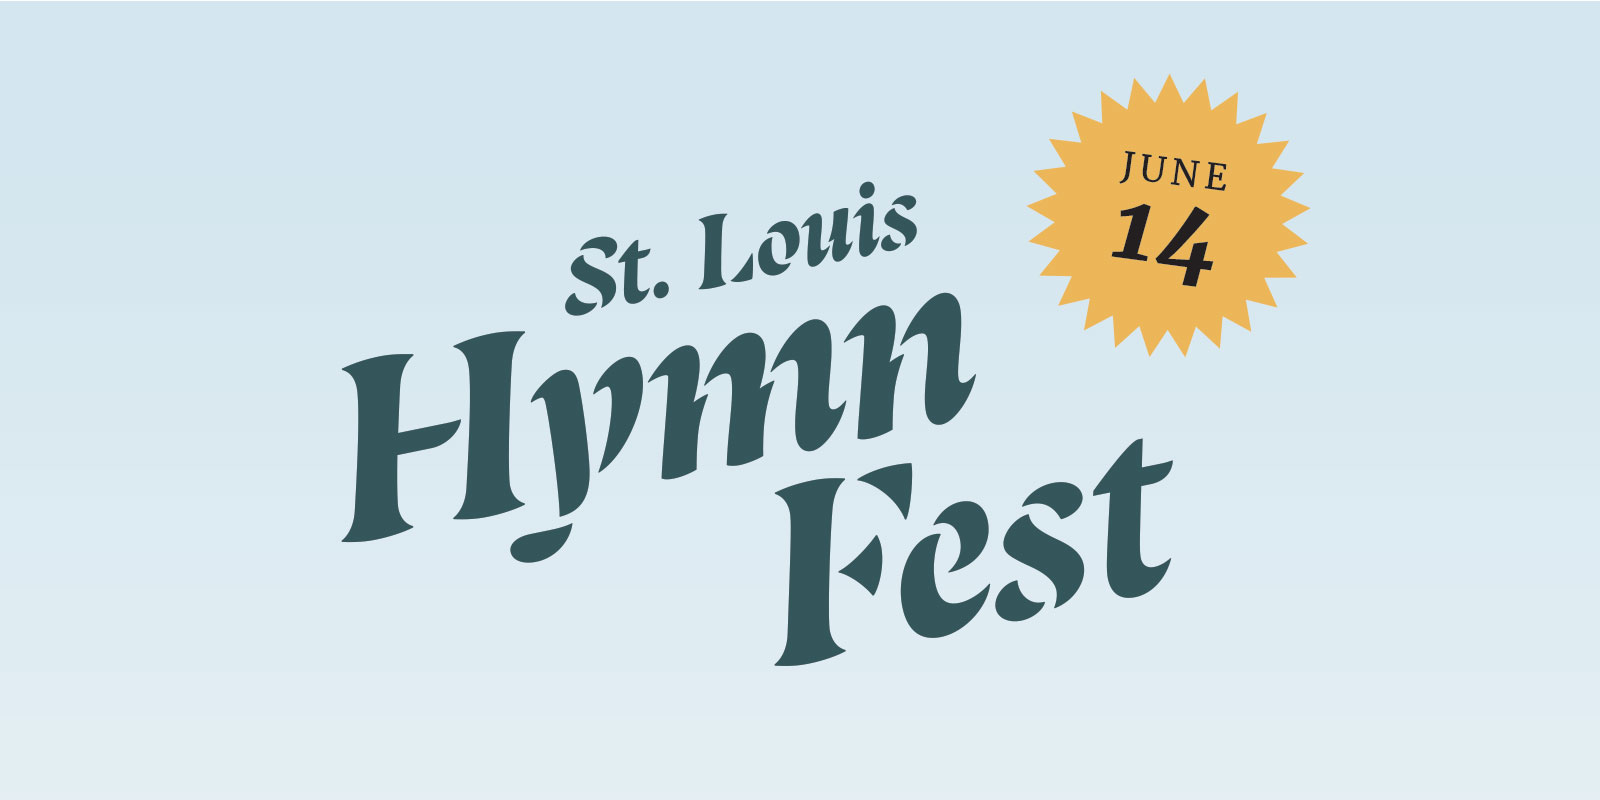 St. Louis Hymn Fest